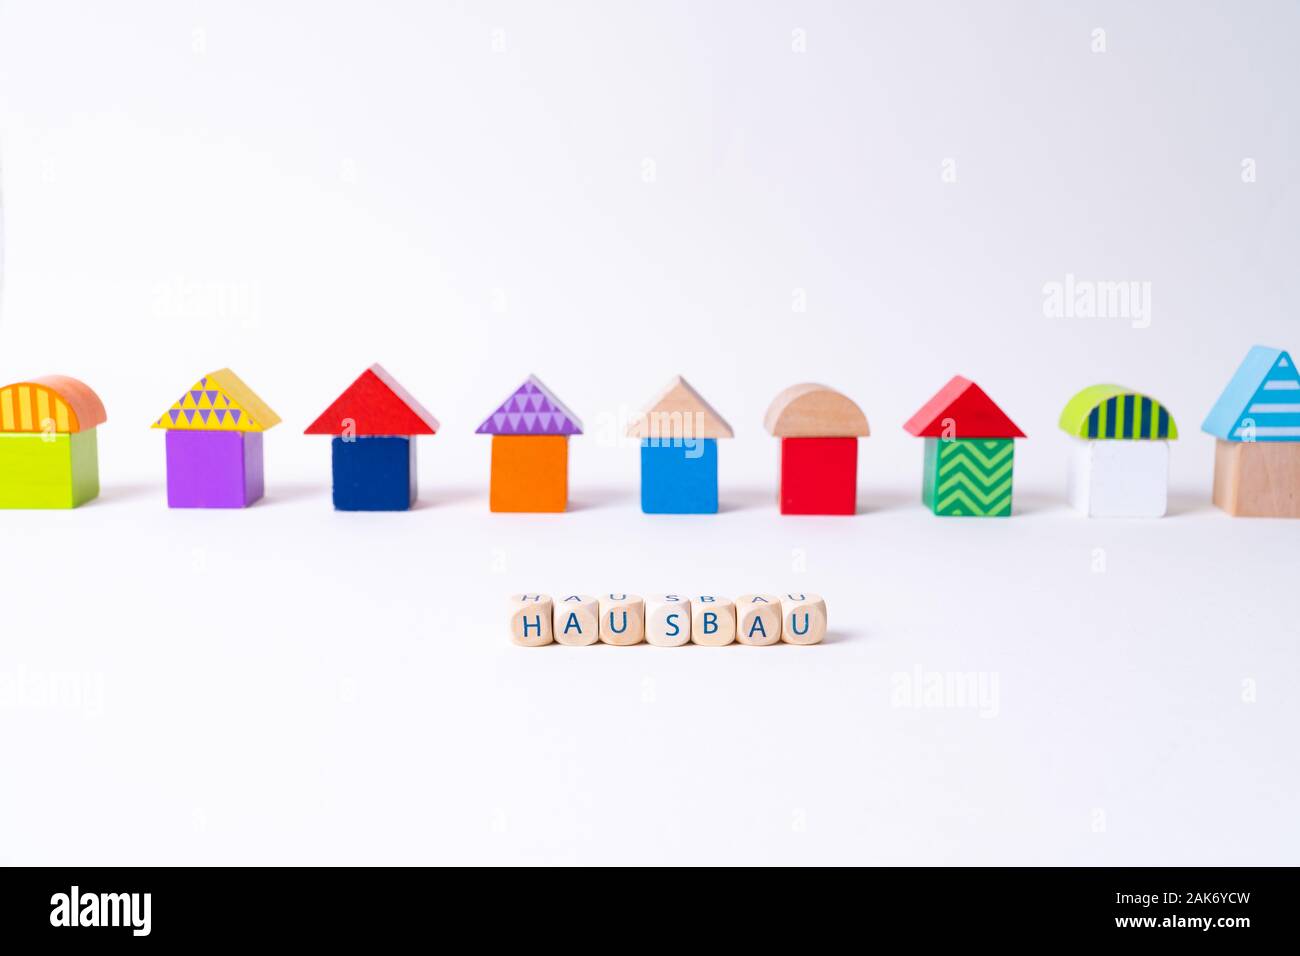 Glaçons avec des lettres pour dire 'Hausbau', le mot allemand pour la construction d'une maison en face d'une rangée de maisons construites de blocs de jouets Jouets colorés Banque D'Images